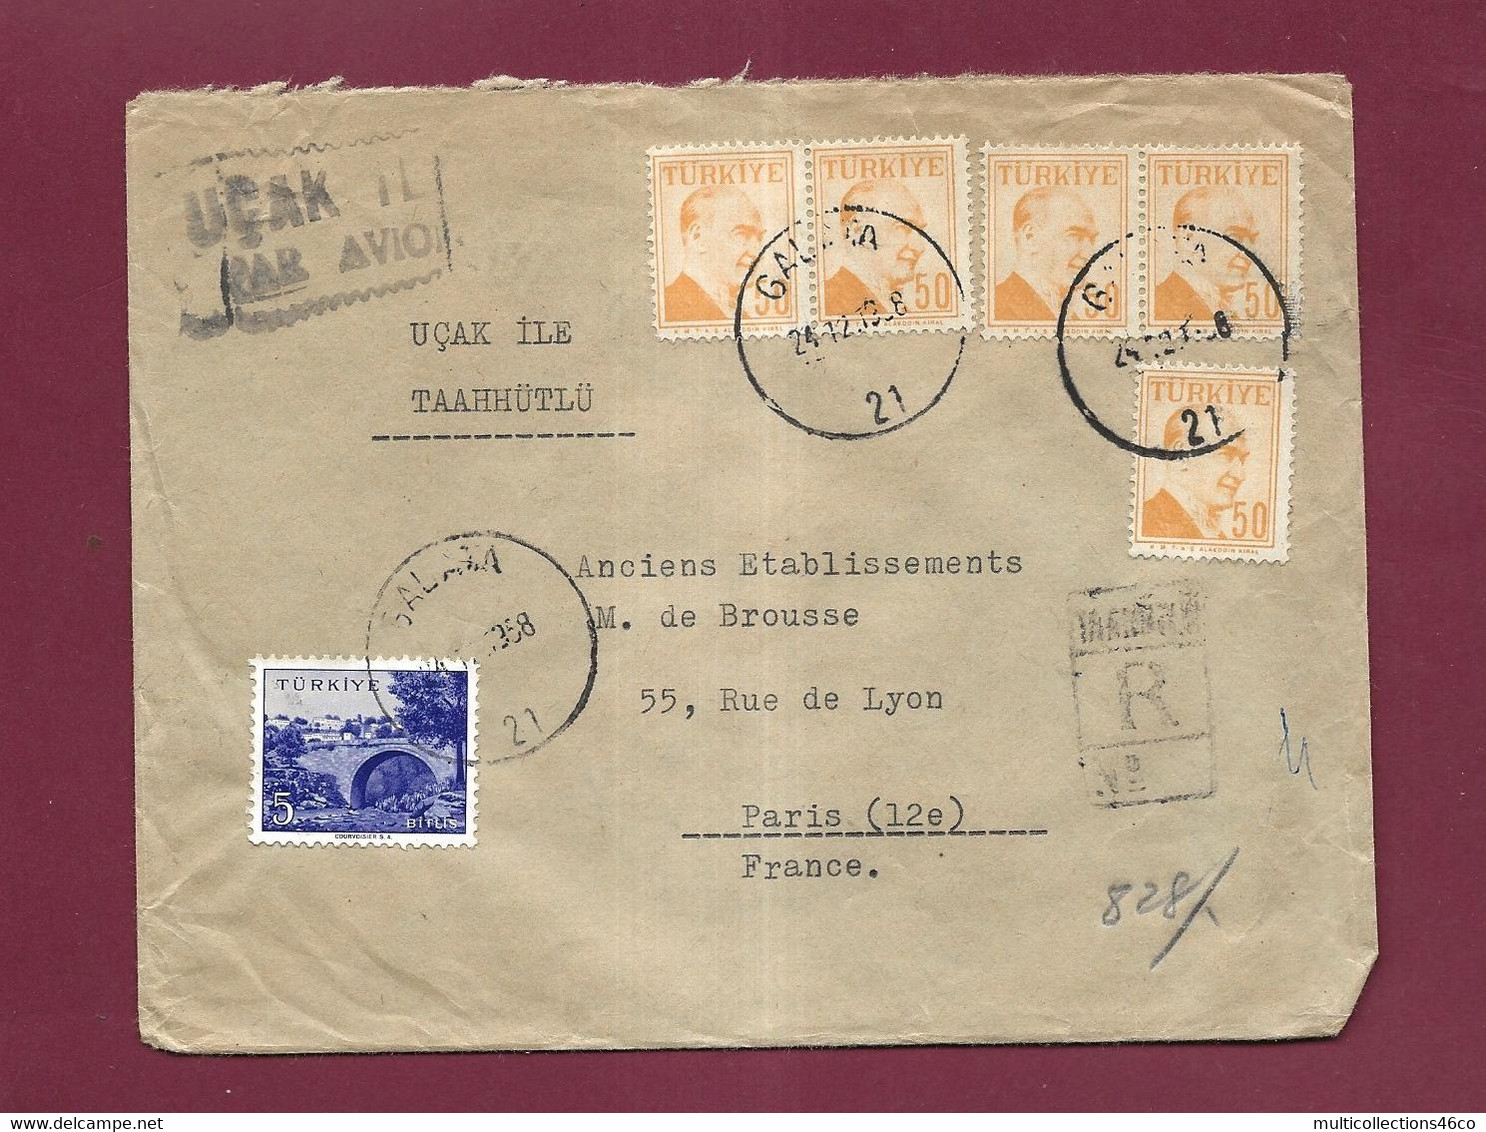 301121 - TURQUIE - Lettre Recommandée Affranchie Oblitérée GALATA  Pour La France  1958 - Covers & Documents